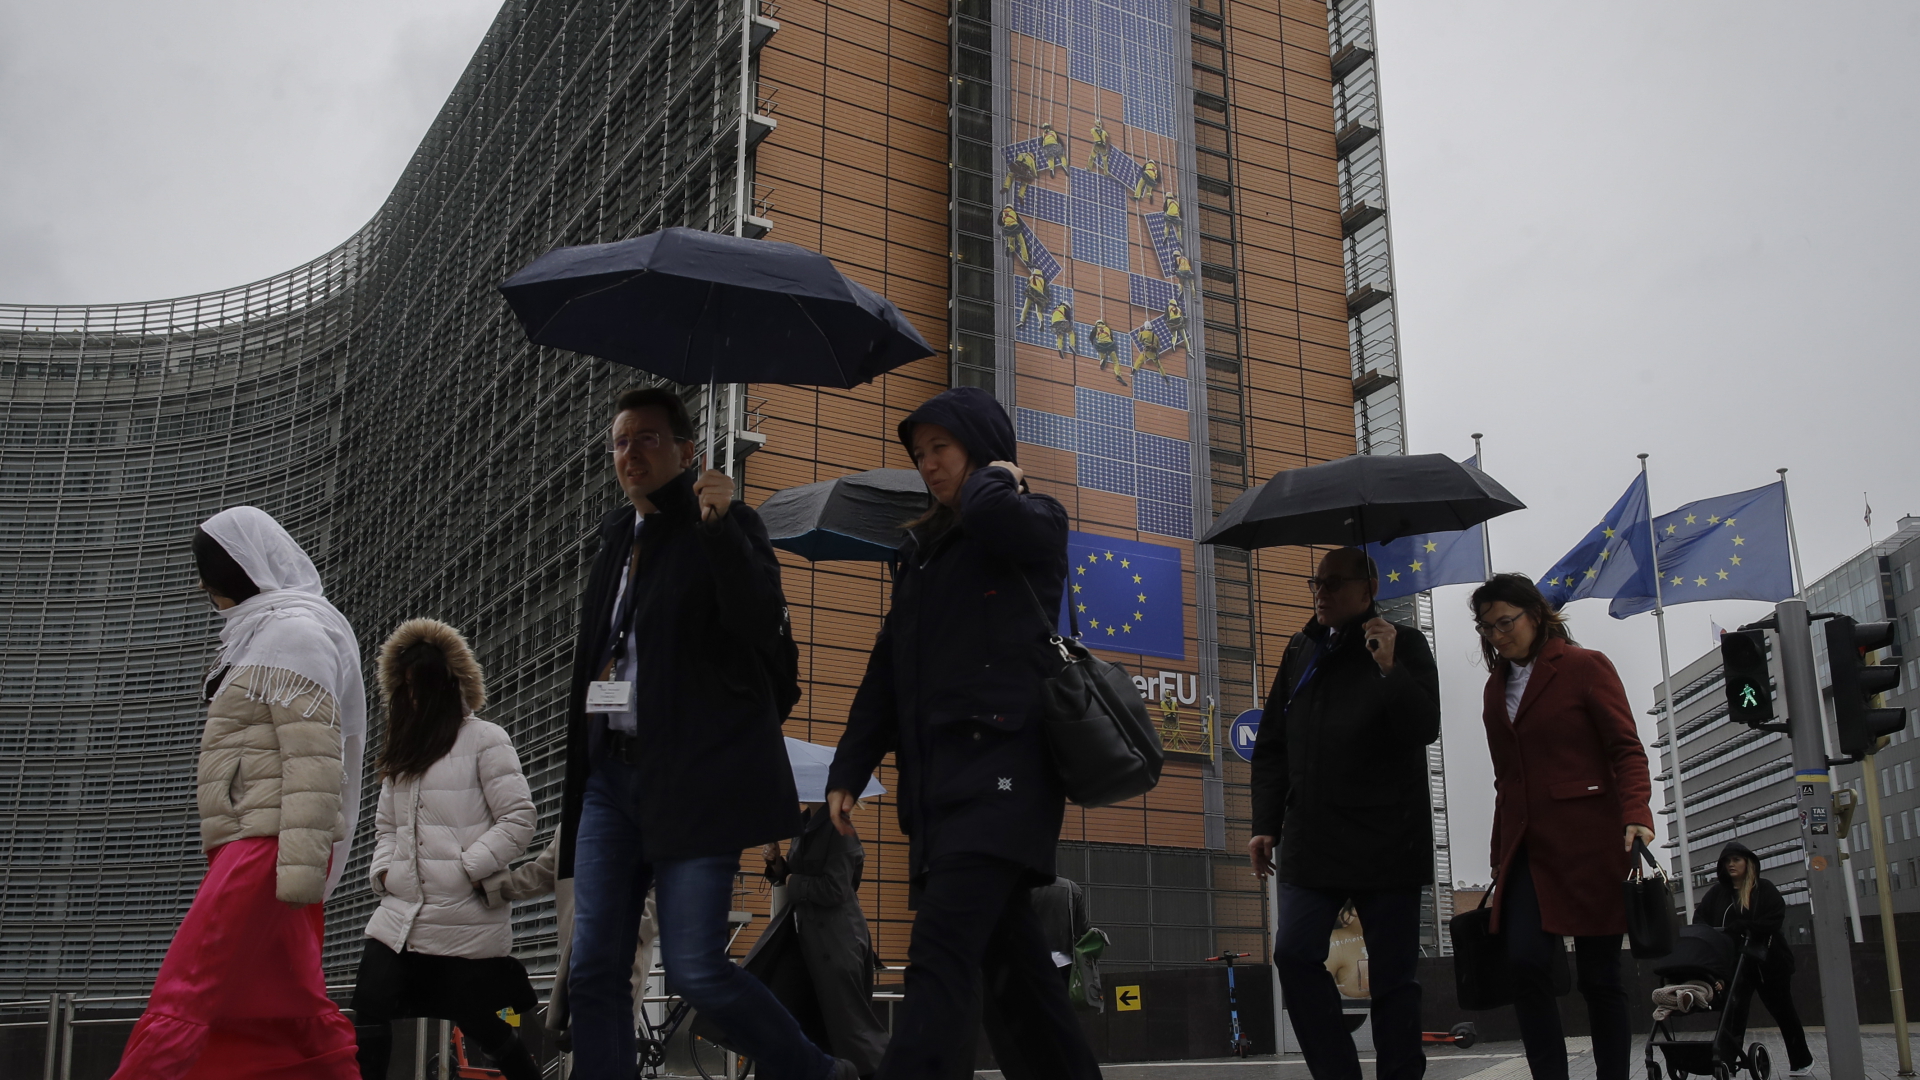 Menschen mit Regenschirm in Brüssel | EPA